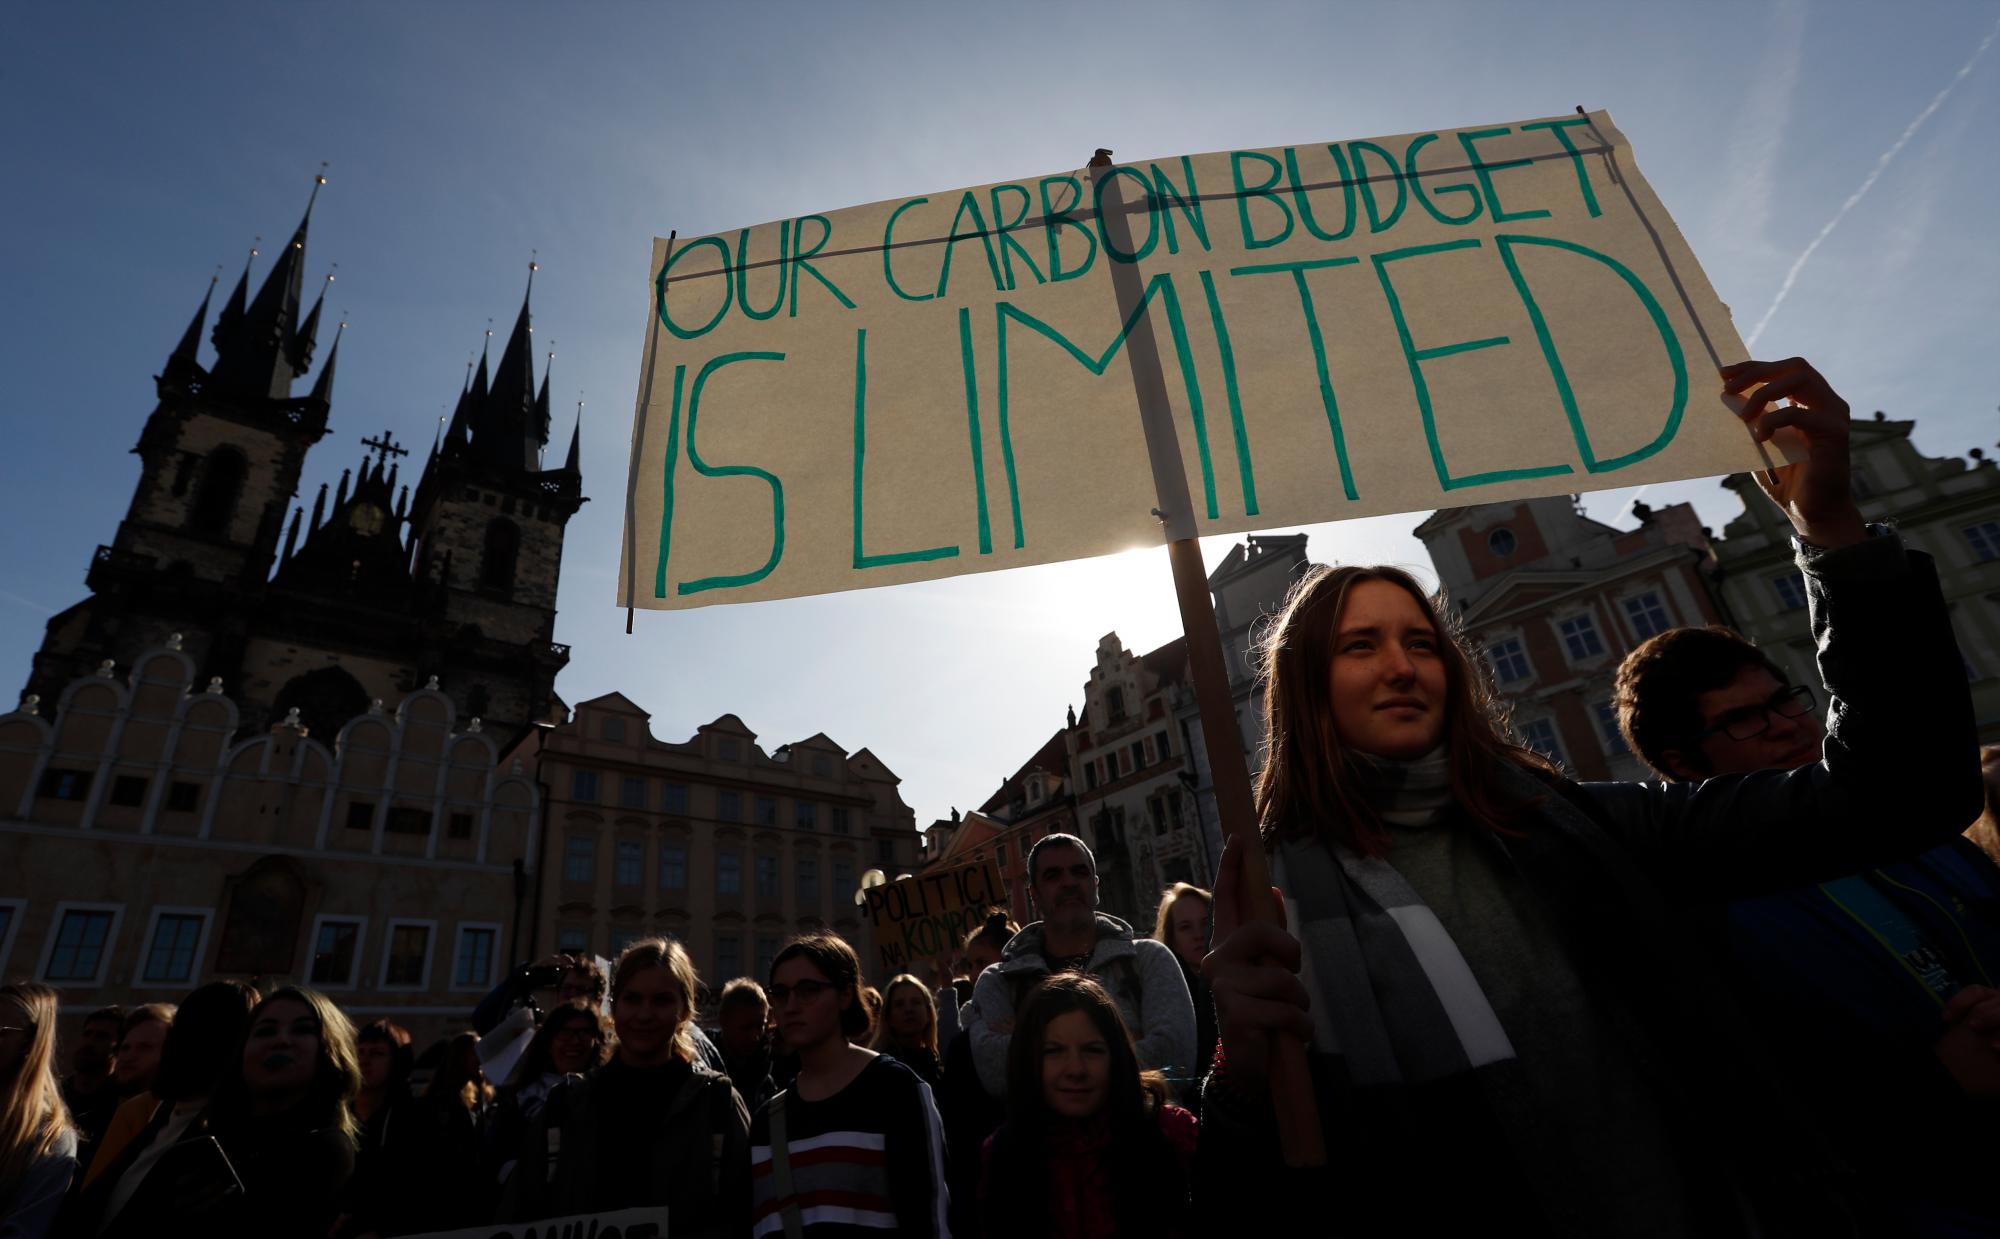 Una niña sostiene un cartel durante una protesta en la Plaza de la Ciudad Vieja en Praga, República Checa, el viernes 20 de septiembre de 2019. Varios cientos de manifestantes se reunieron en respuesta a un día de manifestaciones en todo el mundo que pedían medidas para protegerse contra el cambio climático.